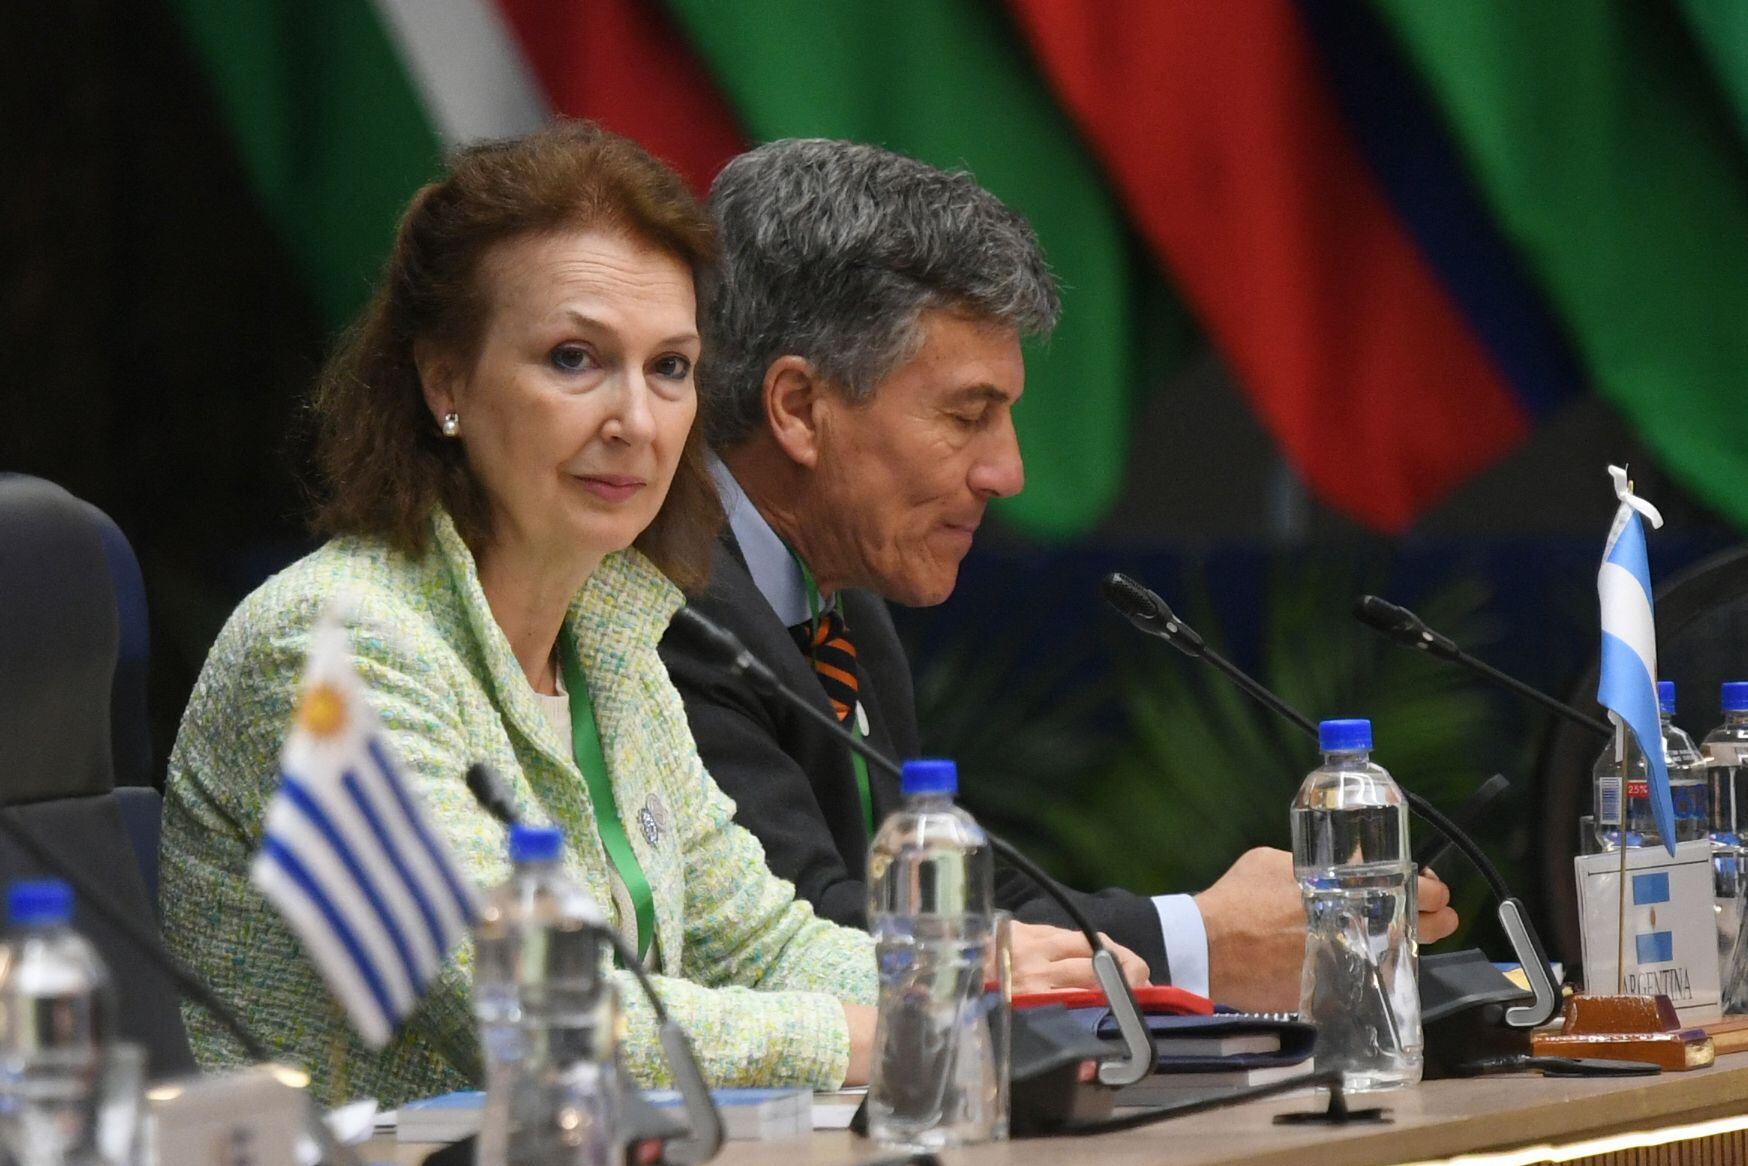 La canciller de Argentina, Diana Mondino, propuso este domingo modalidades de negociación más flexibles en el Mercosur, creado en 1991 por Argentina, Brasil, Paraguay y Uruguay.